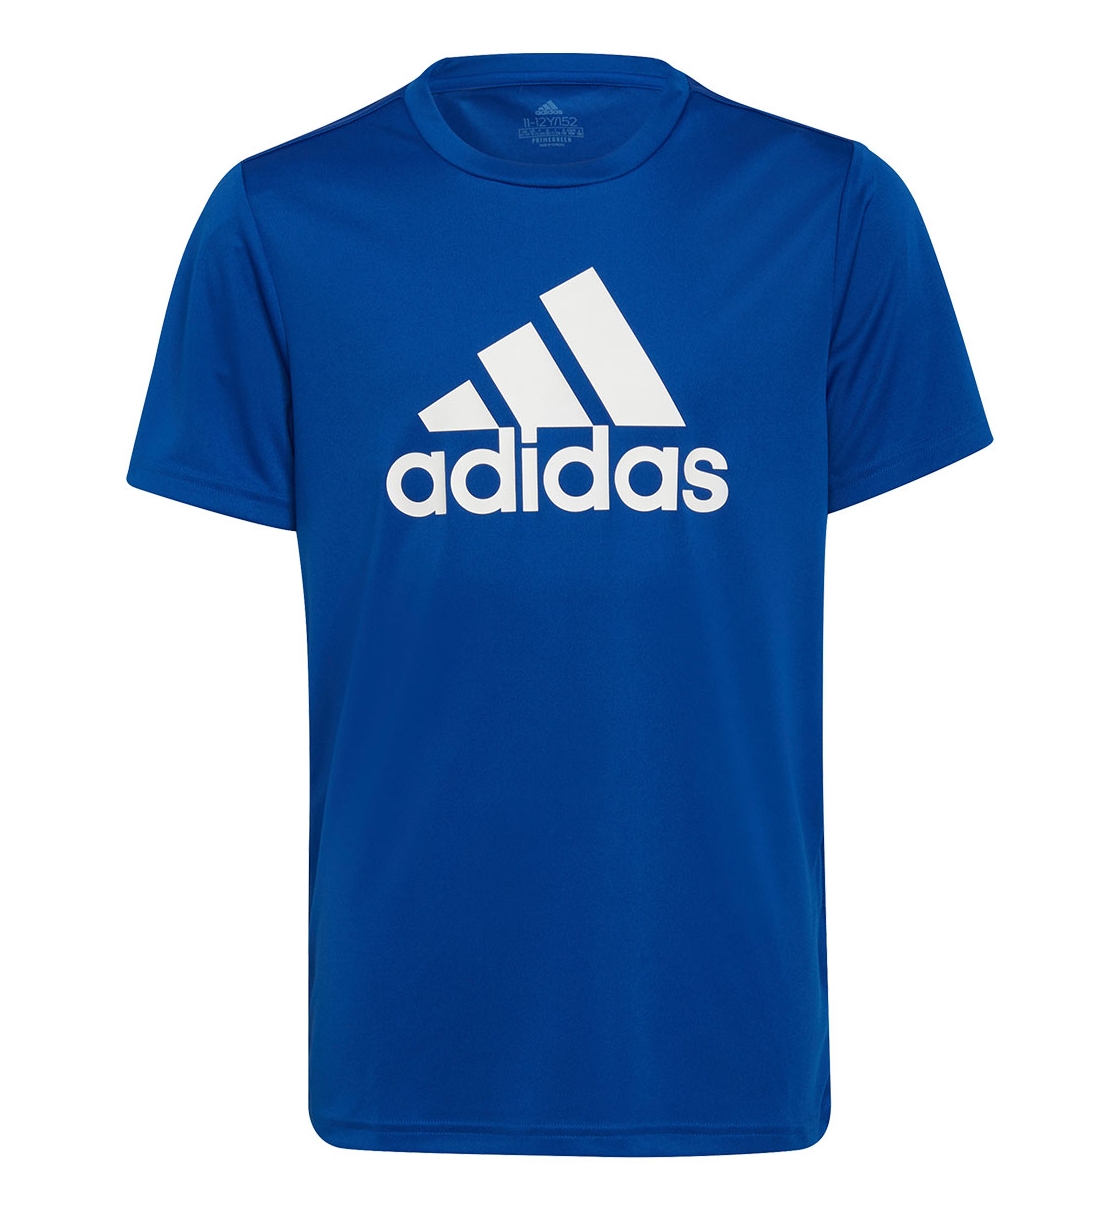 Adidas Ss22 Designed To Move Big Logo T-Shirt